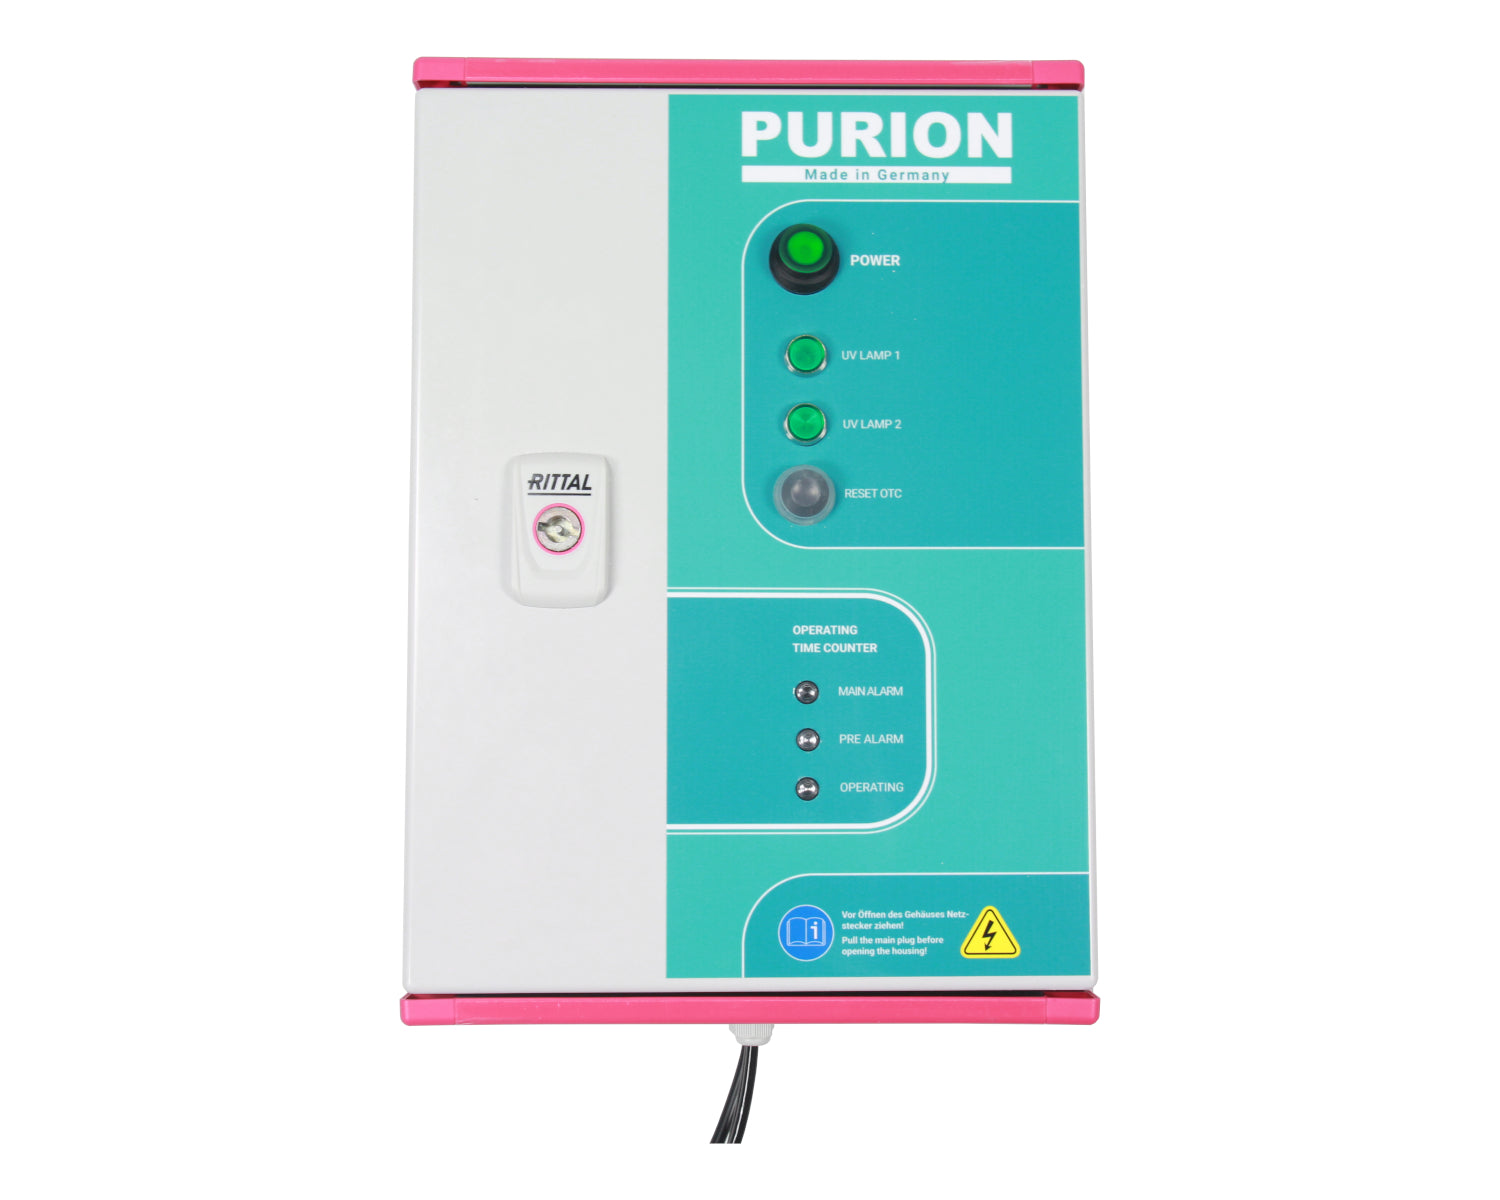 Das PURION 2500 H DUAL OTC Bundle der Purion GmbH ist ein leistungsstarkes UV-C-Desinfektionssystem, das Legionellen effektiv beseitigt. Mit dem PURION 2500 H DUAL OTC Bundle gewährleisten Sie maximalen Schutz vor Legionelleninfektionen.